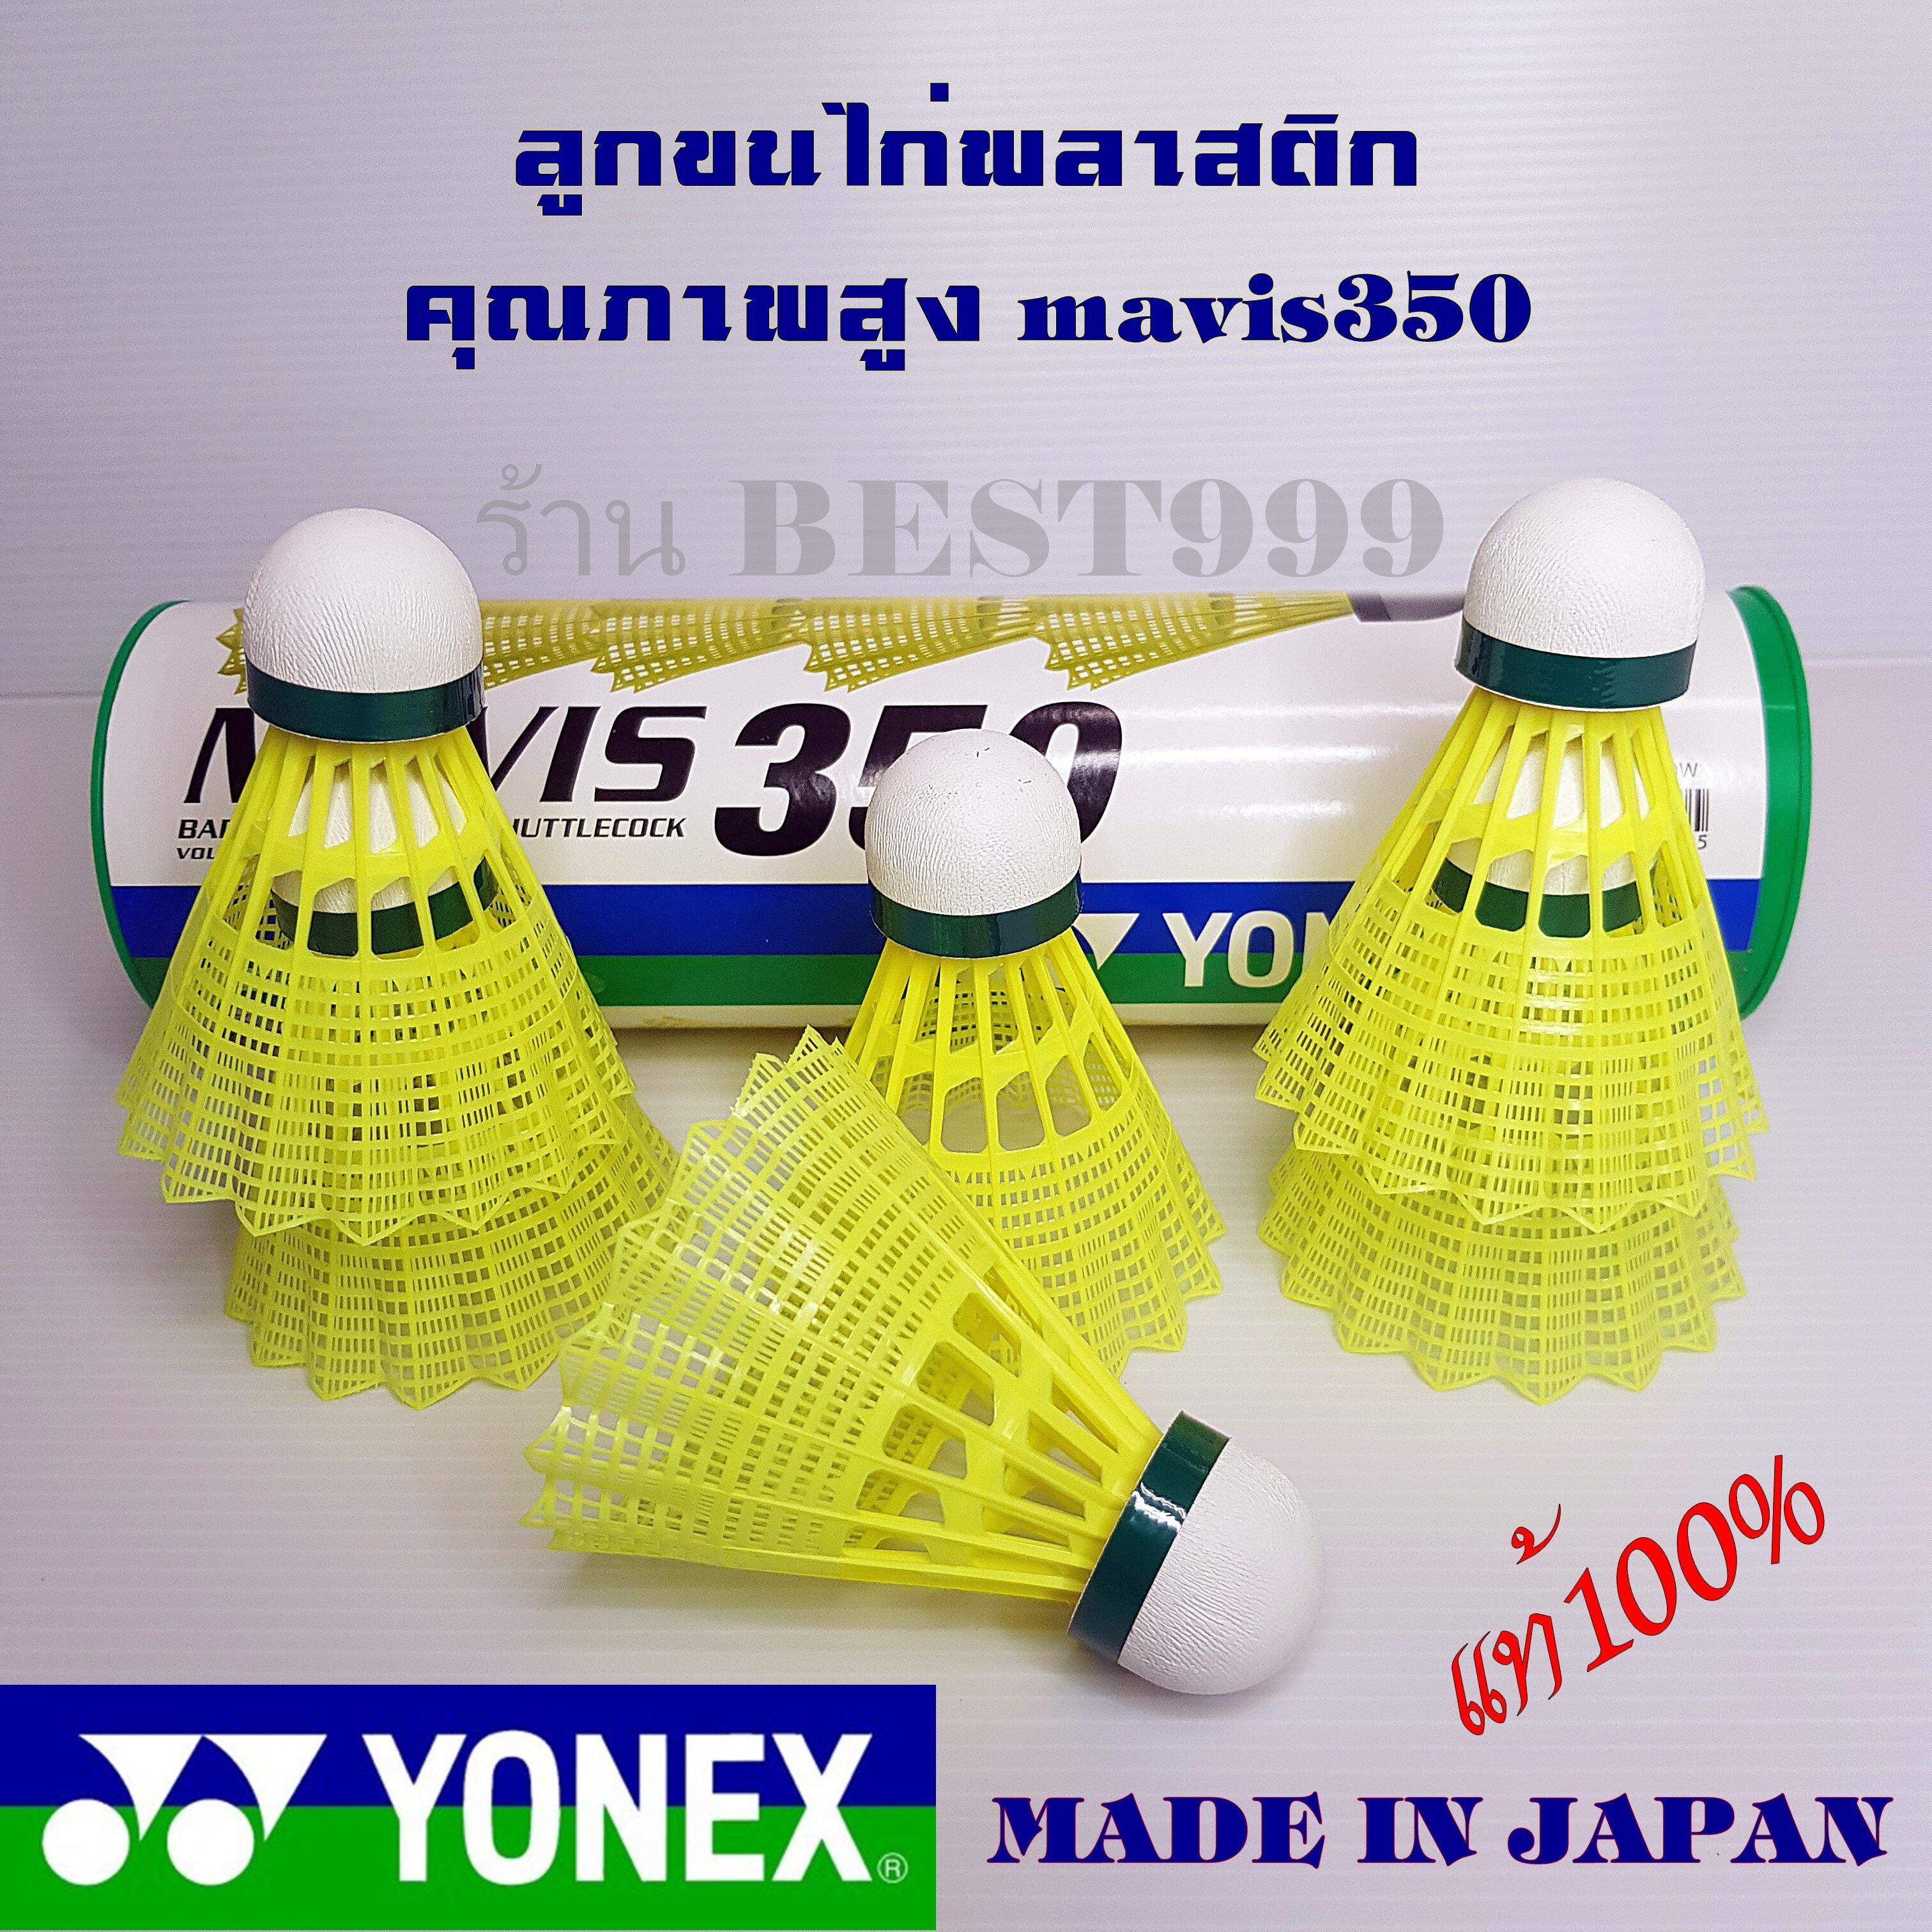 ข้อมูลประกอบของ ลูกแบด YONEX  MAVIS 350 (นำเข้าจากญี่ปุ่น) ลูกแบดมินตันพลาสติก plastic badminton ball (มาใหม่) ลูกขนไก่ ลูกแบด ขนไก่ ลูกแบดมินตัน